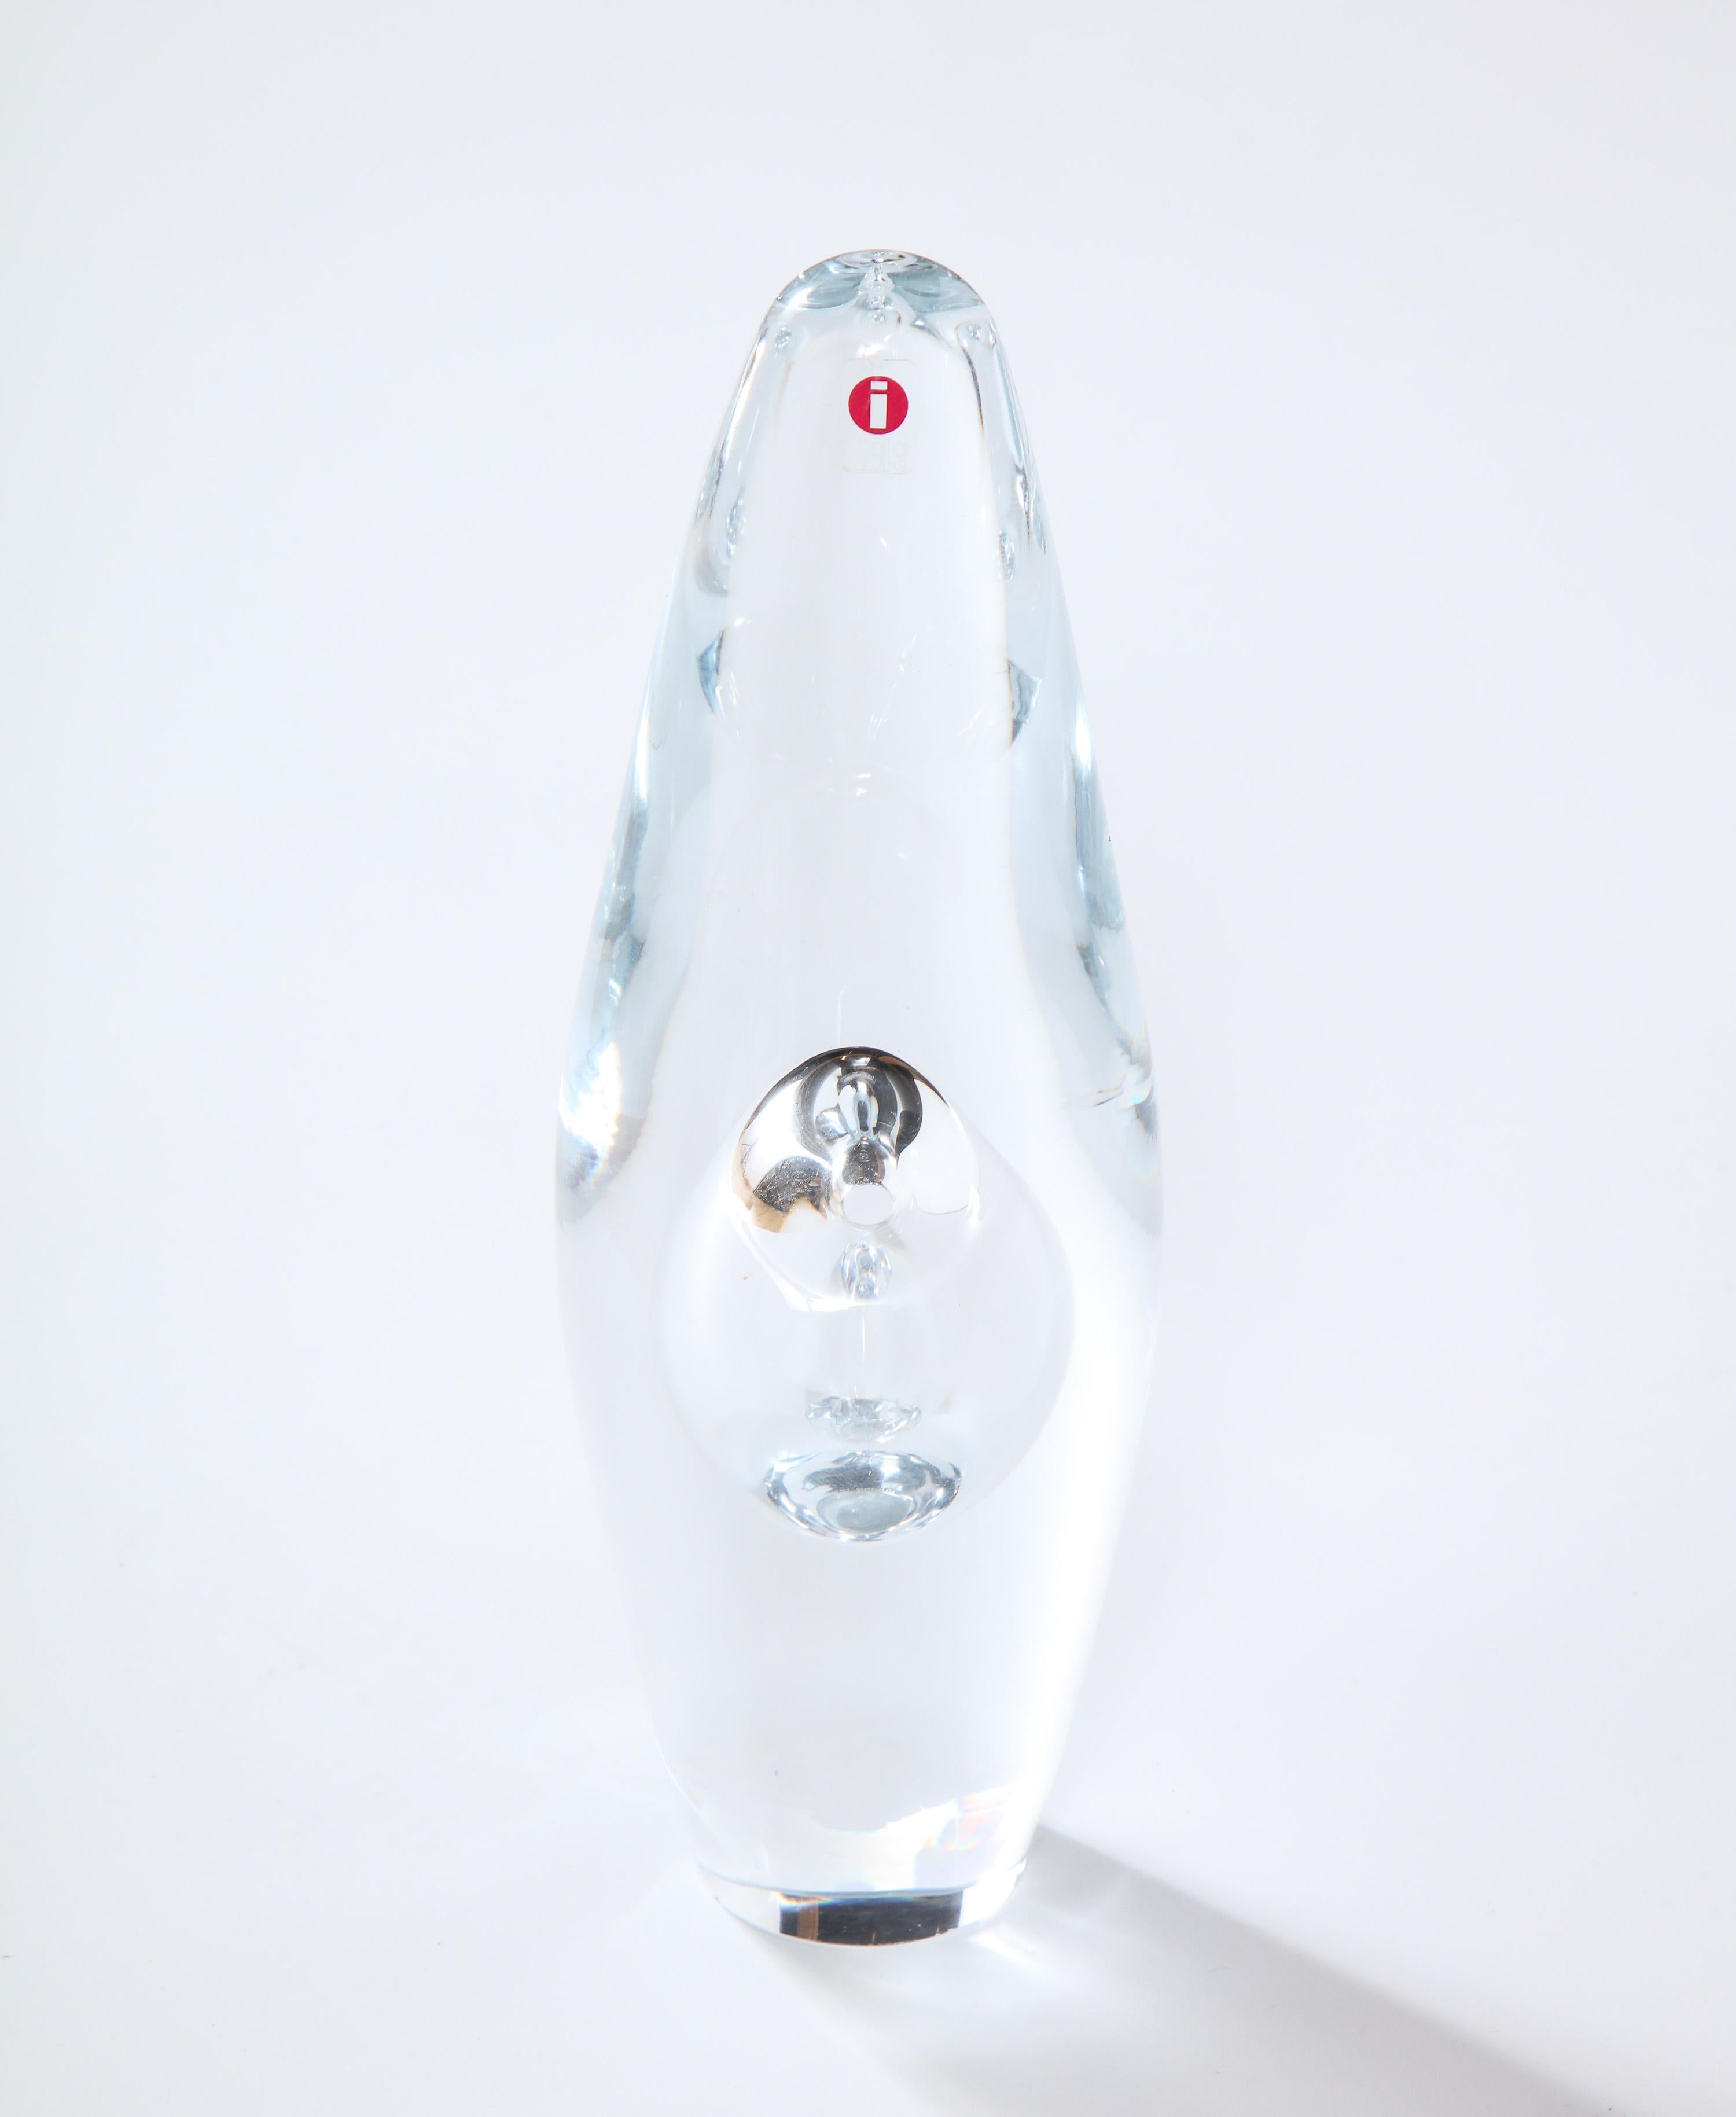 Dekorative Vase aus Kristallglas von Ittala, Finnland. Die Vase heißt 